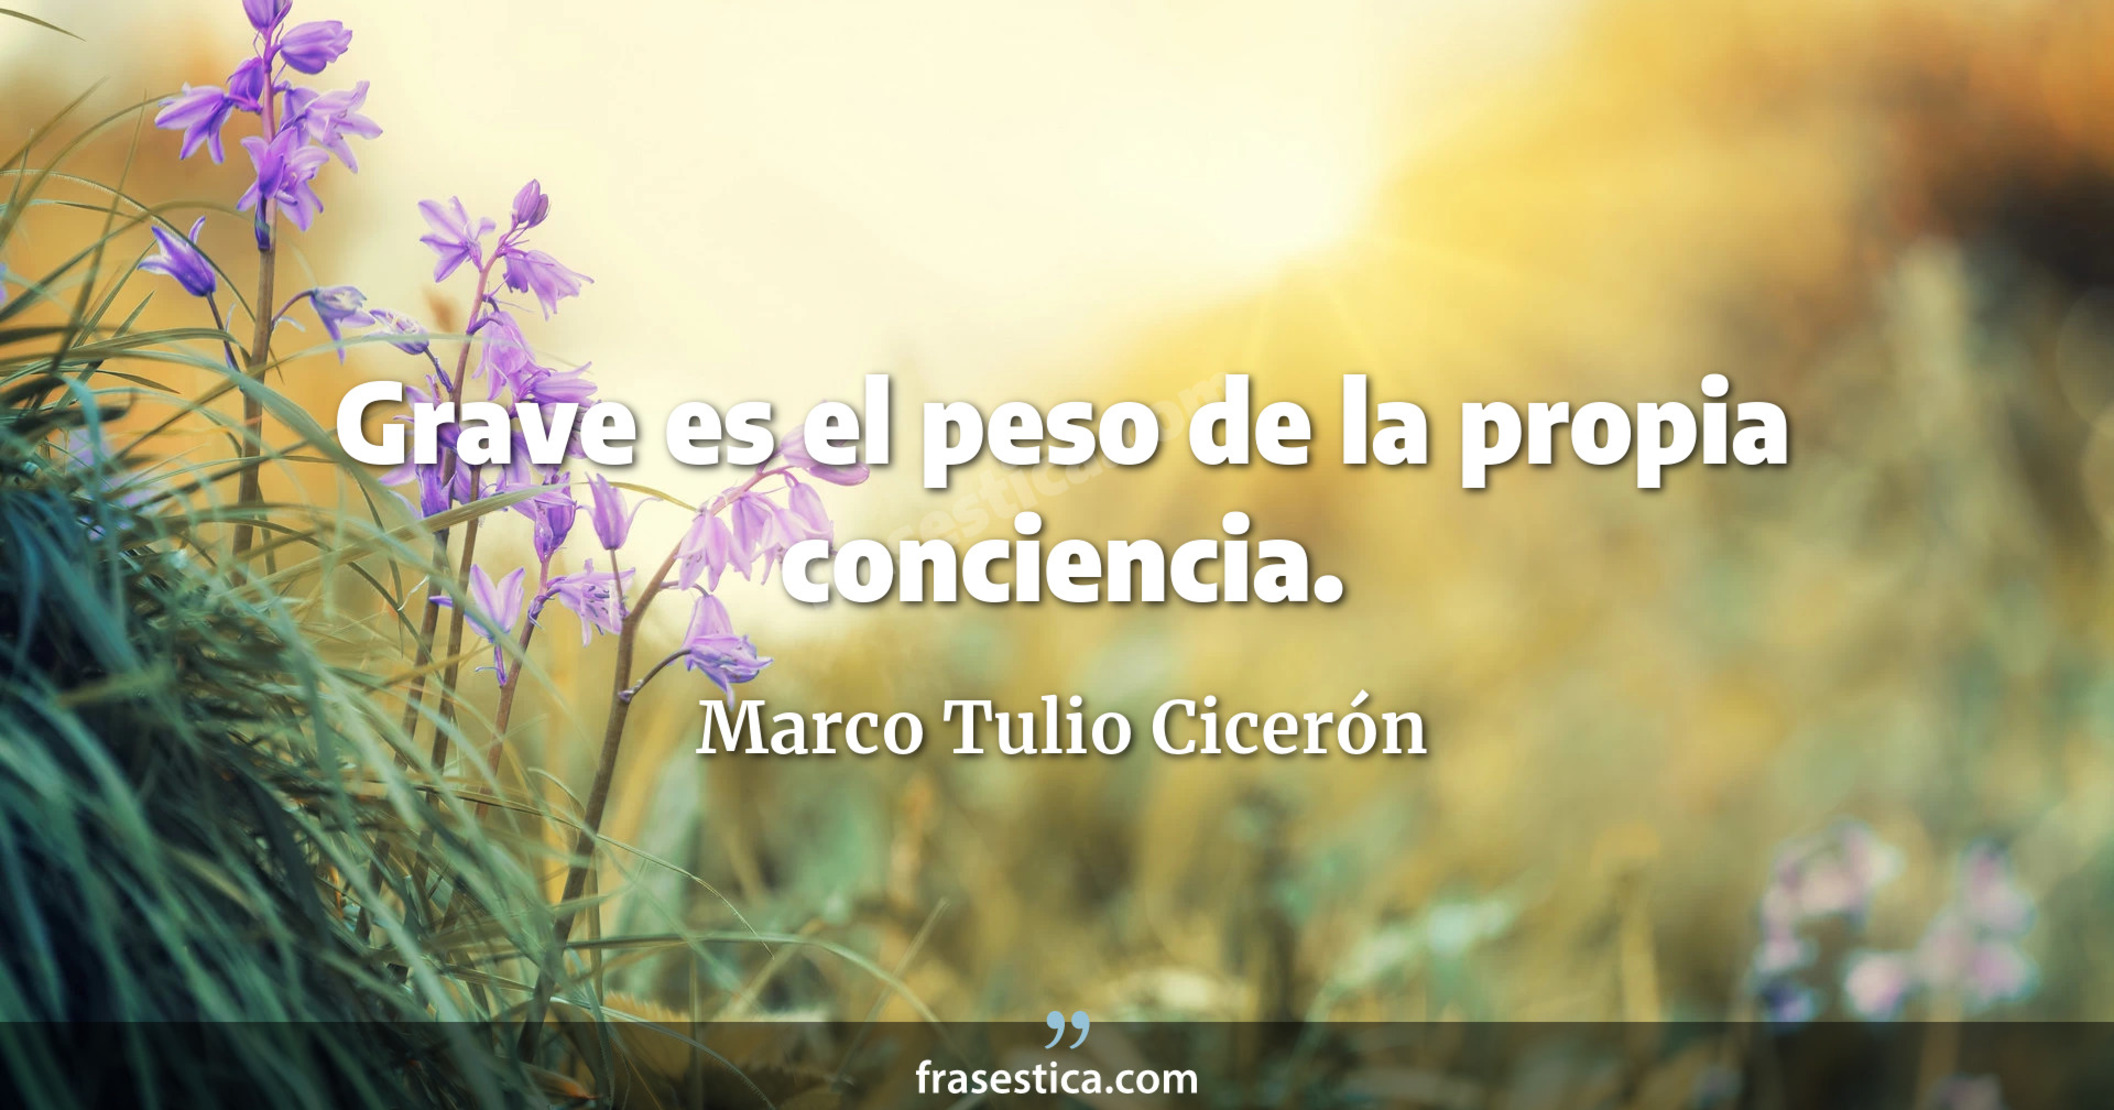 Grave es el peso de la propia conciencia. - Marco Tulio Cicerón